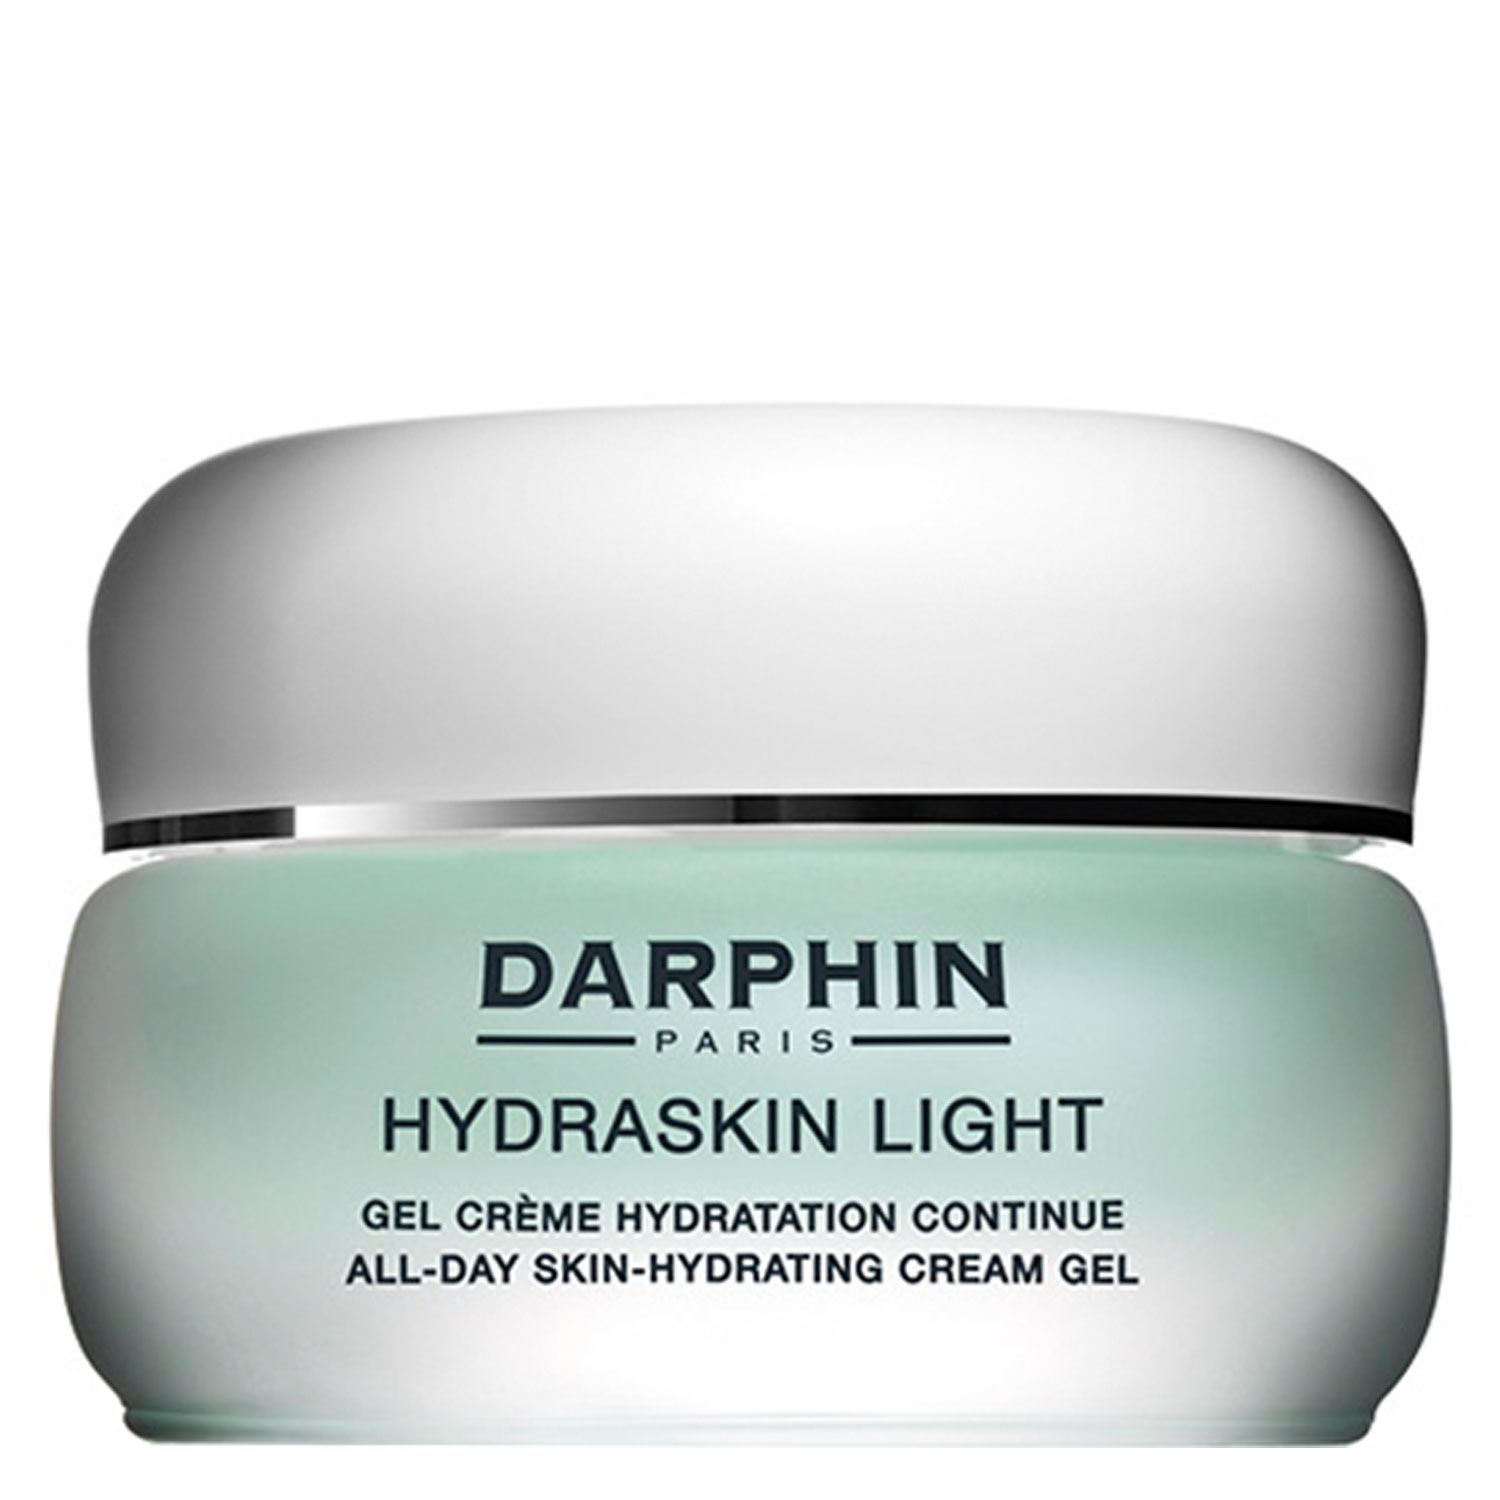 Produktbild von HYDRASKIN - Light All-Day Skin-Hydrating Cream Gel